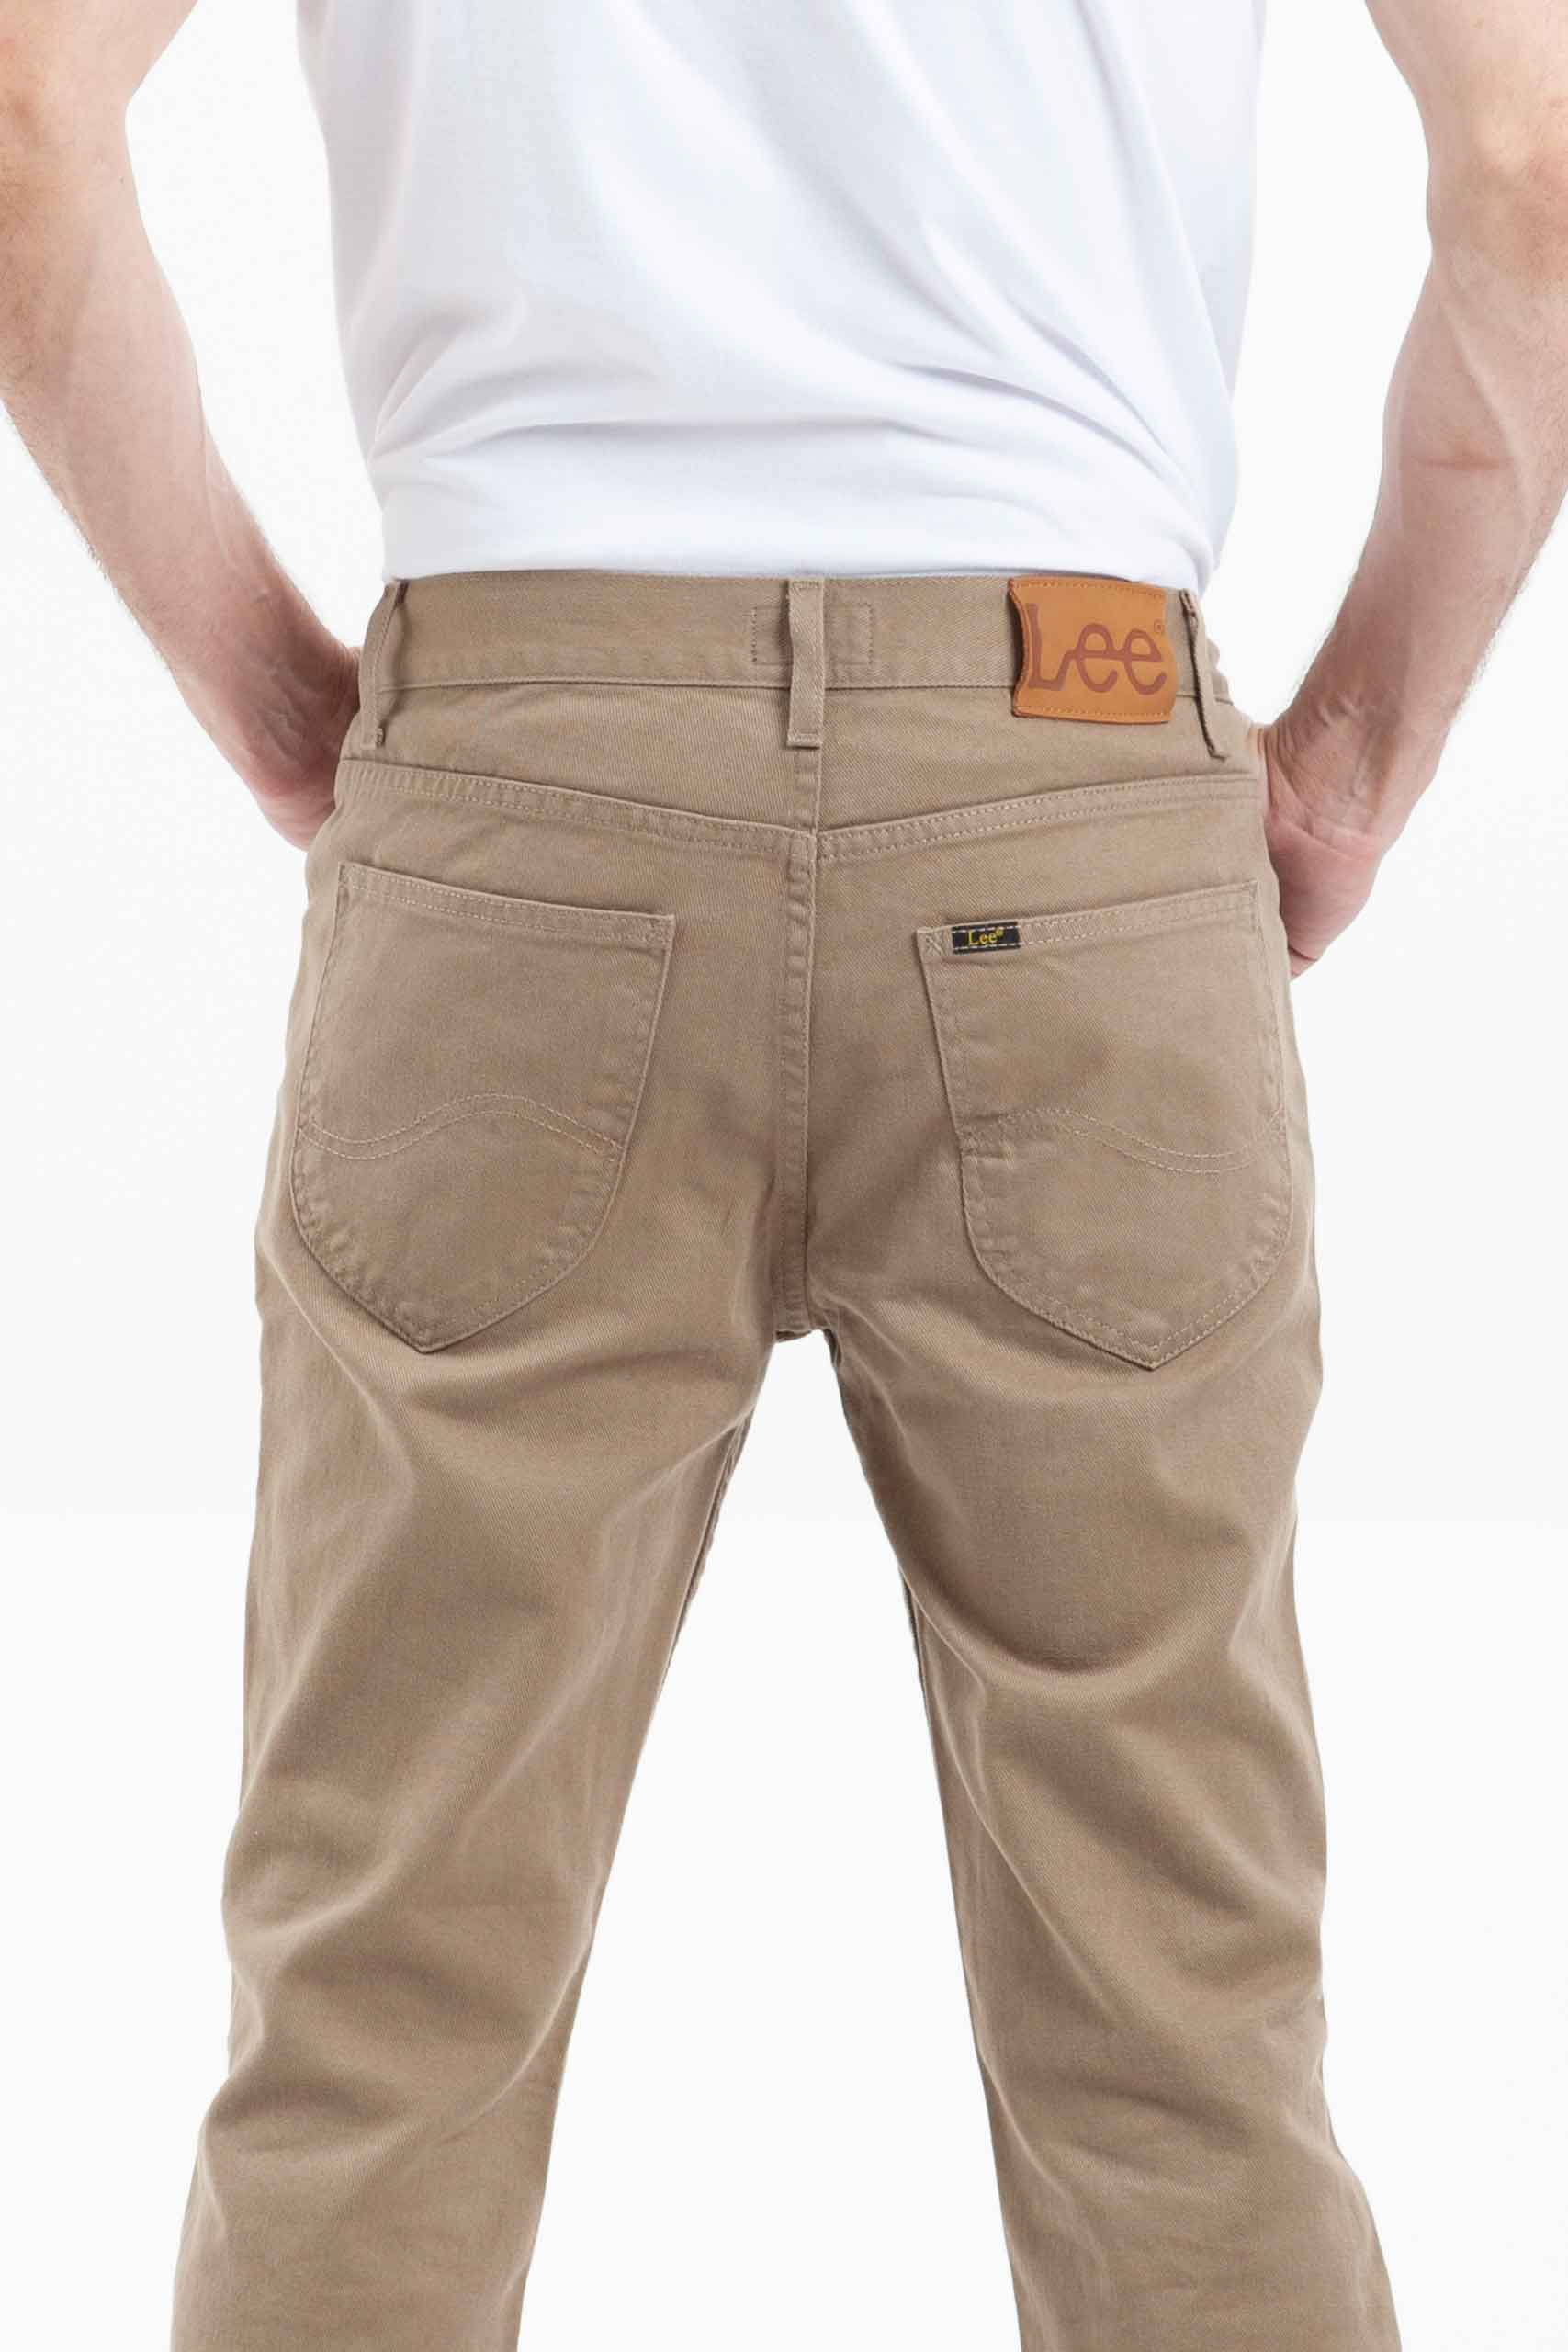 Vista posterior de jean de color caqui con bolsillos de marca lee